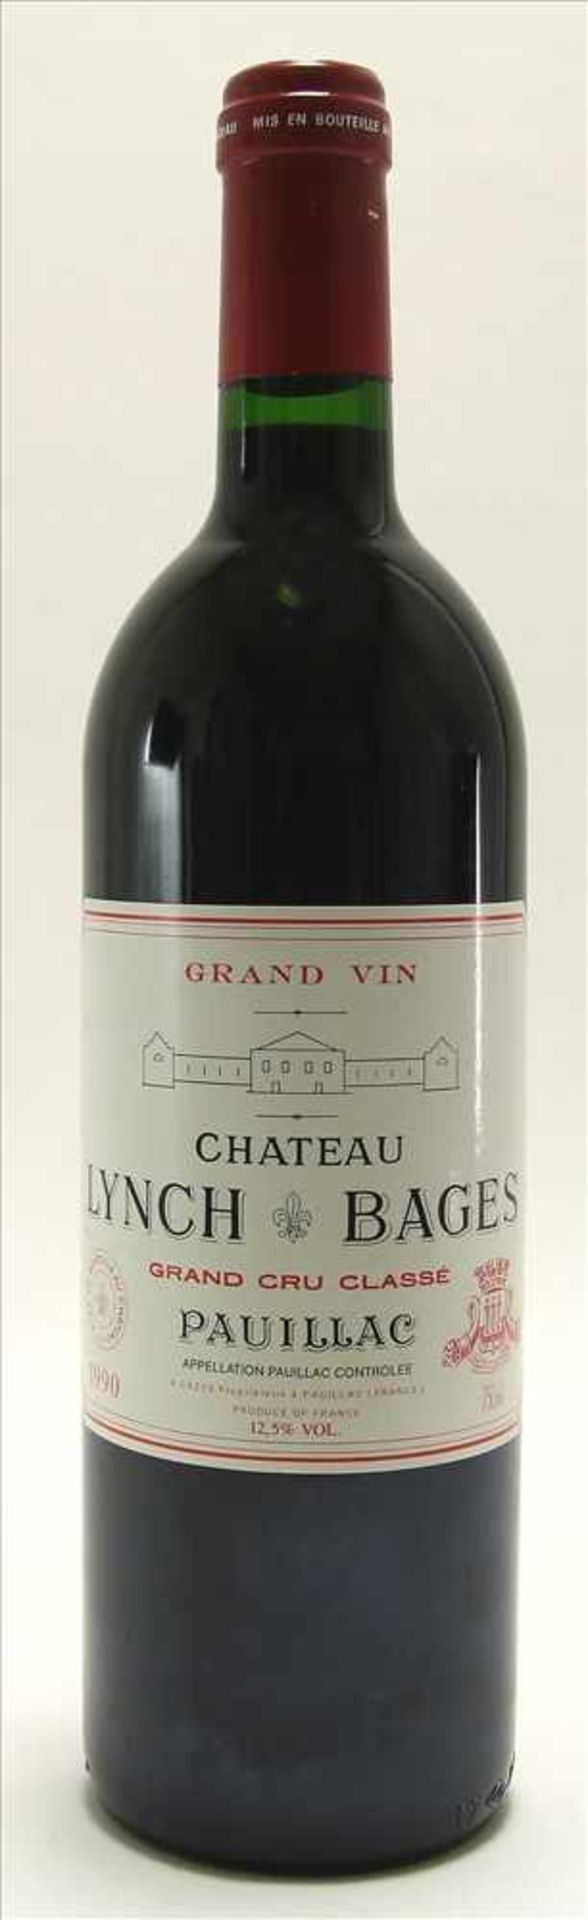 Chateau Lynch Bages 1990Grand Cru Classé. 0,75 Liter Flasche. Füllstand Anfang Hals wie